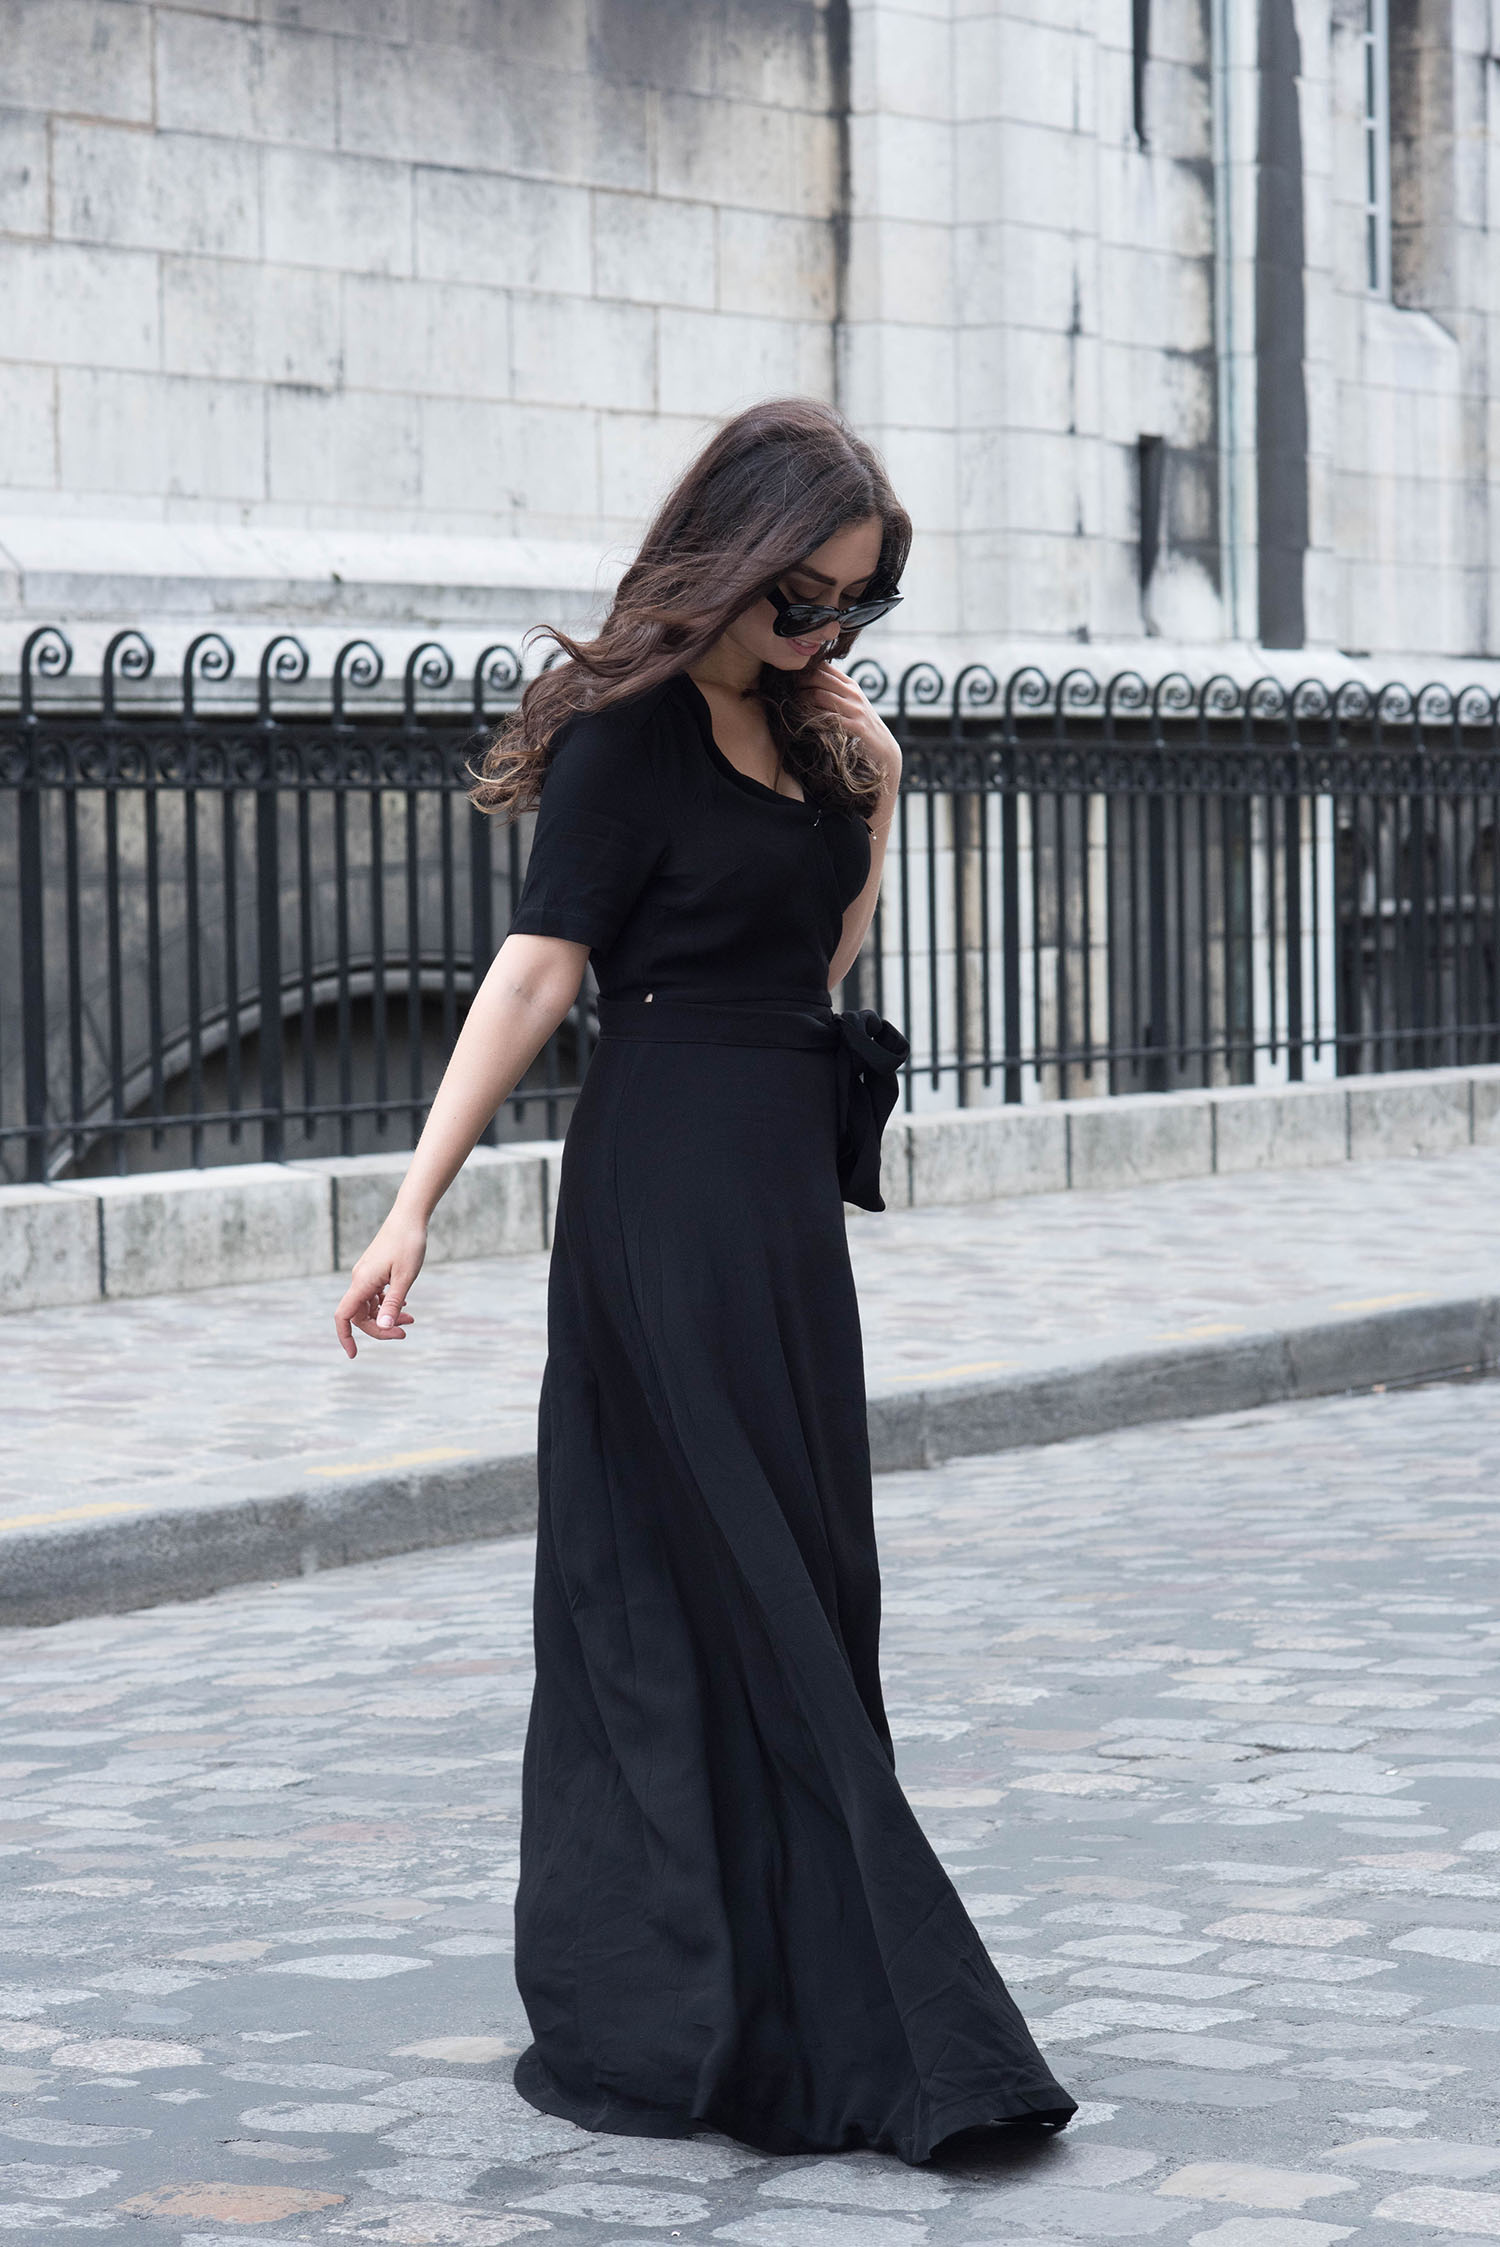 Winnipeg fashion blogger Cee Fardoe of Coco & Vera walks in Montmartre wearing a black Ivy & Oak wrap dress